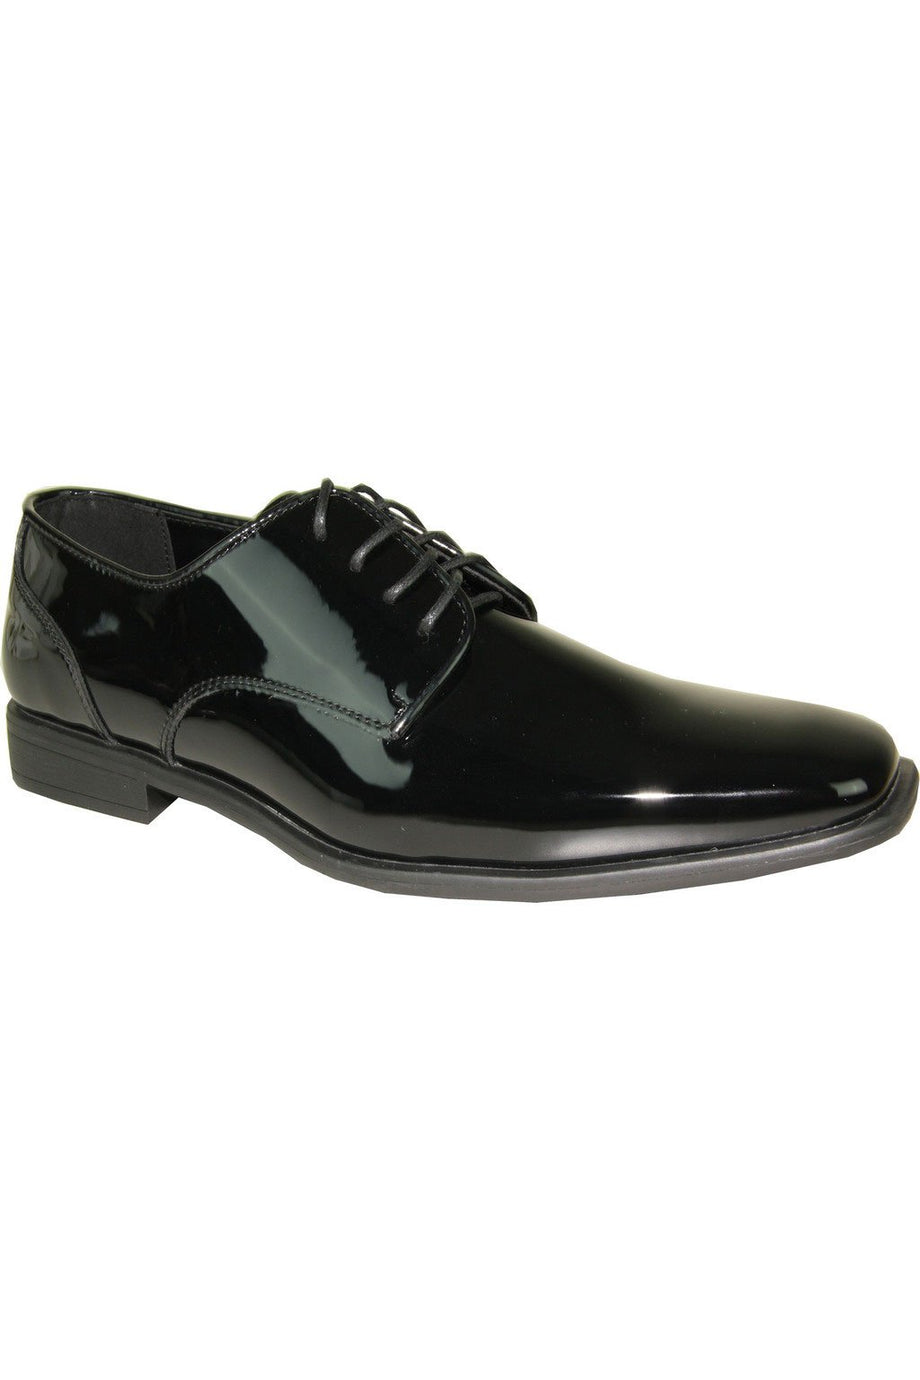 Tuxedo Shoes | Buy4LessTuxedo | buy4lesstuxedo.com – Buy4LessTuxedo.com